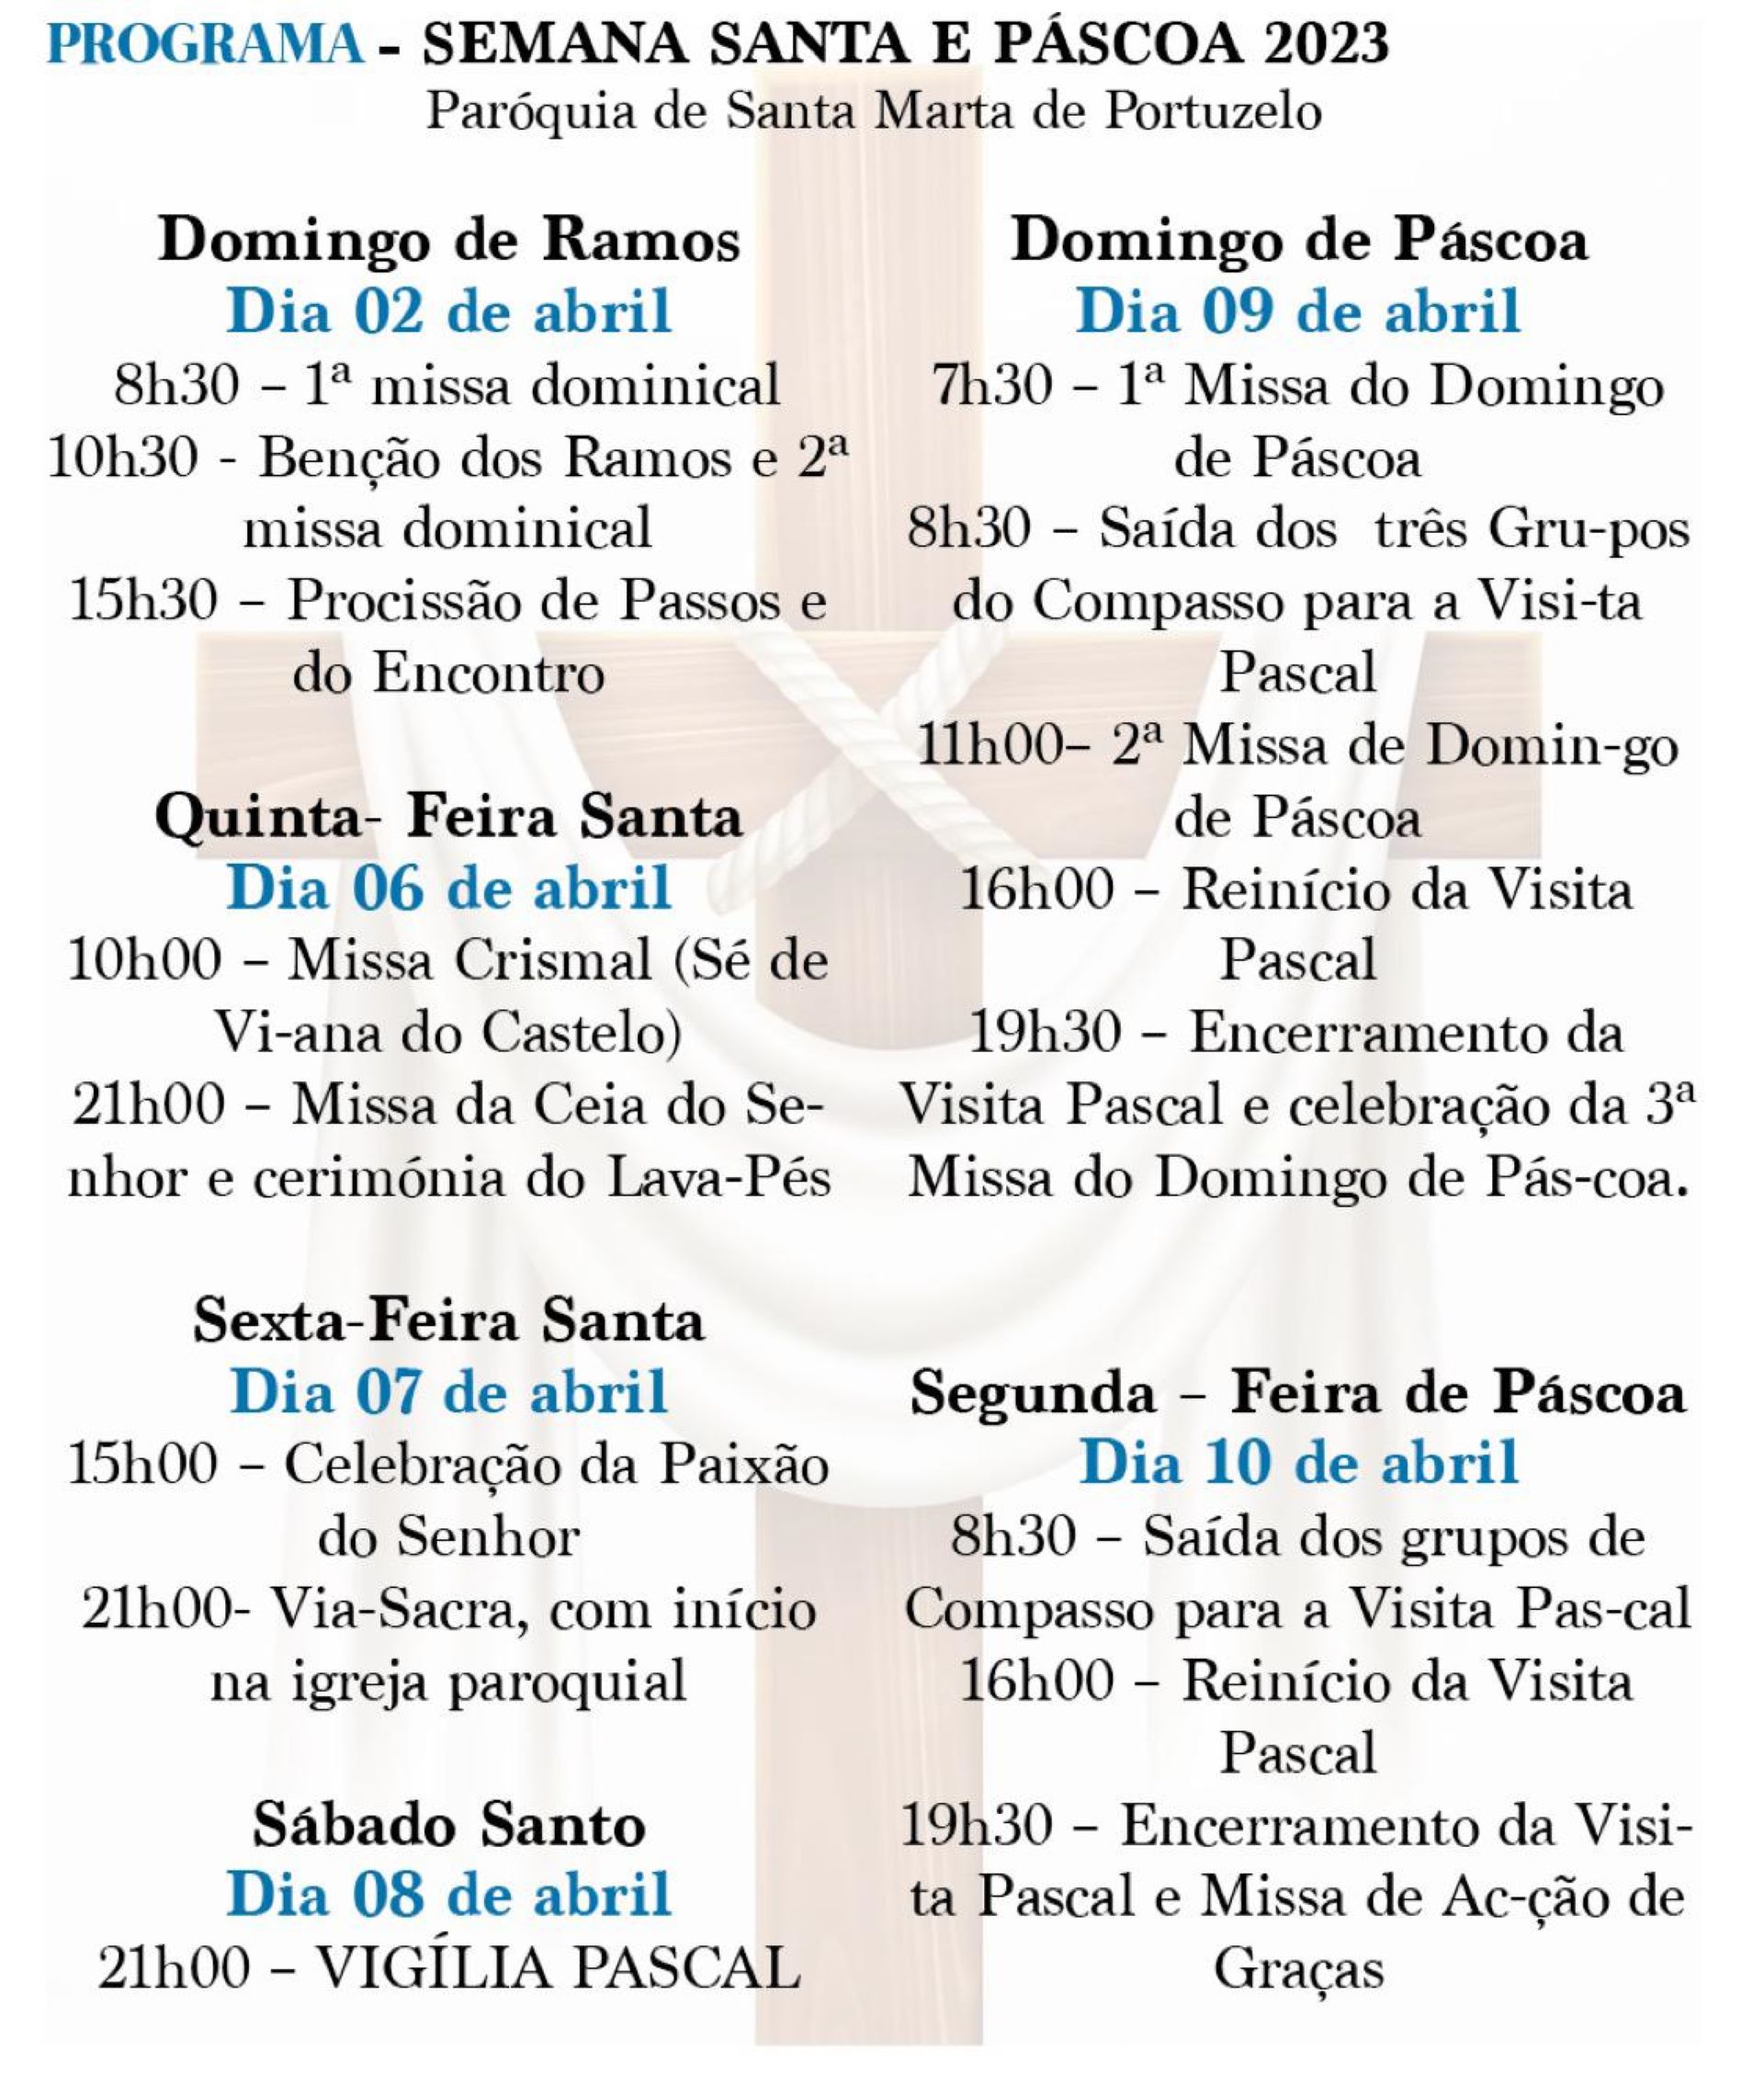 Semana Santa e Páscoa 2023 em Santa Marta de Portuzelo